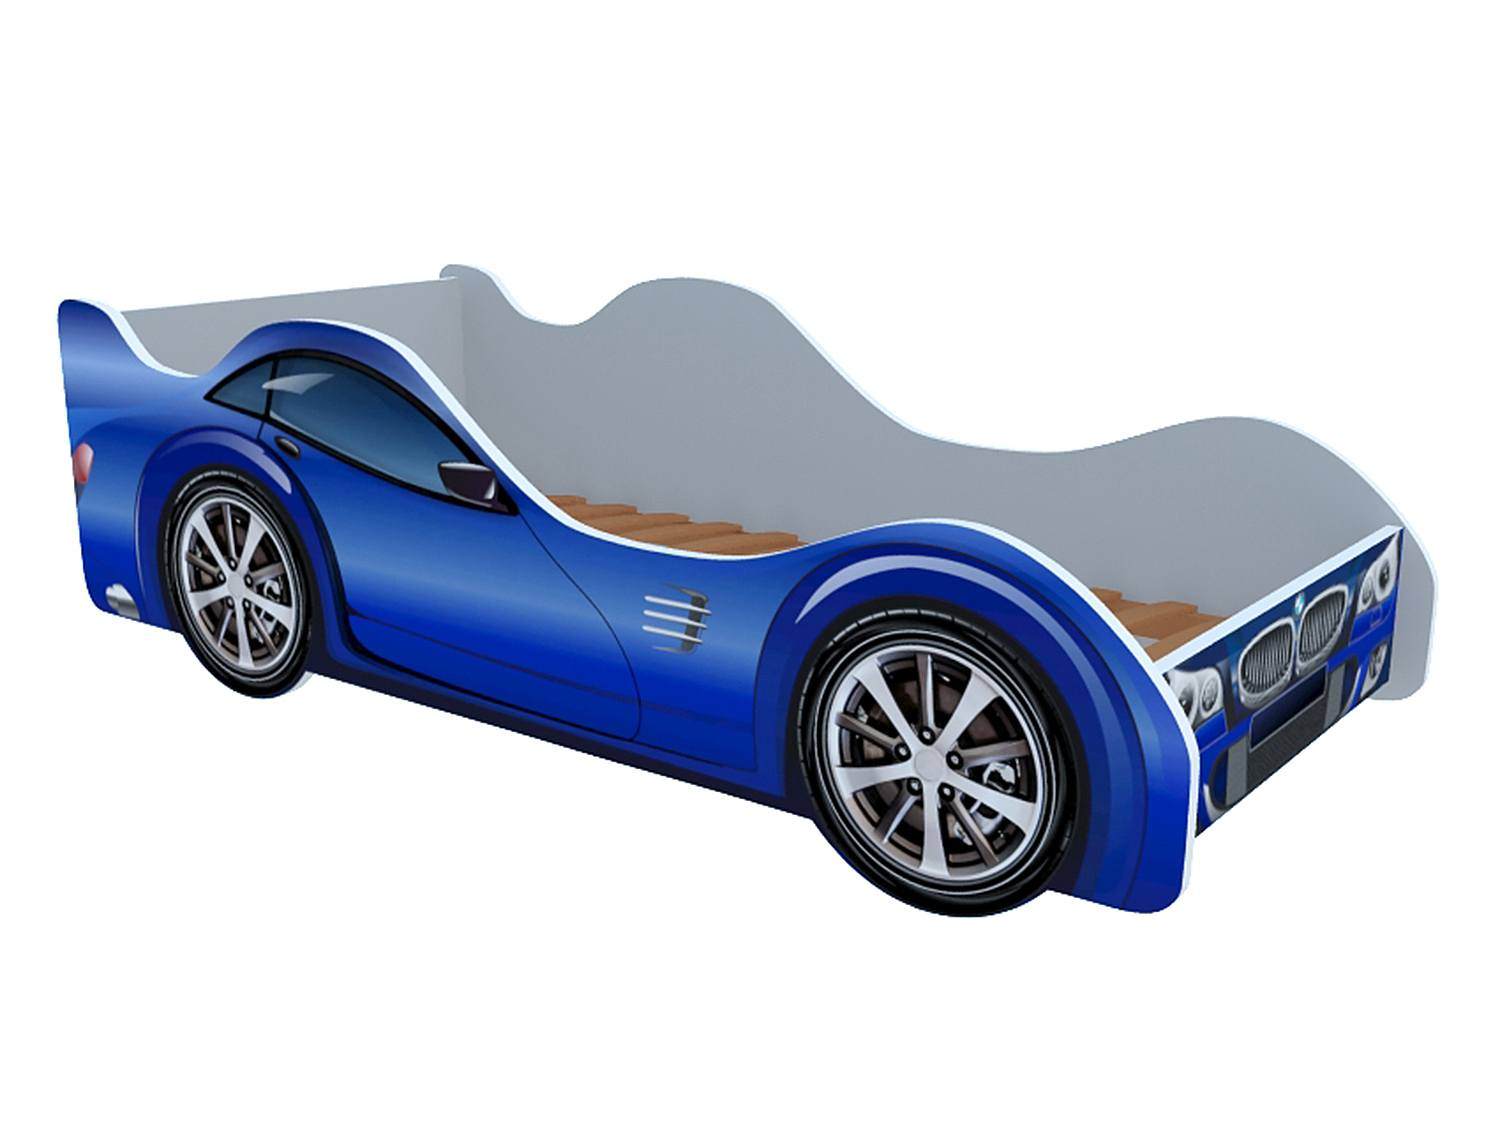 Форма машина купить. Кровать машинка Феррари. Кровать детская машинка БМВ. Кровать-машинка БМВ синяя. Кровать машина Феррари синяя.